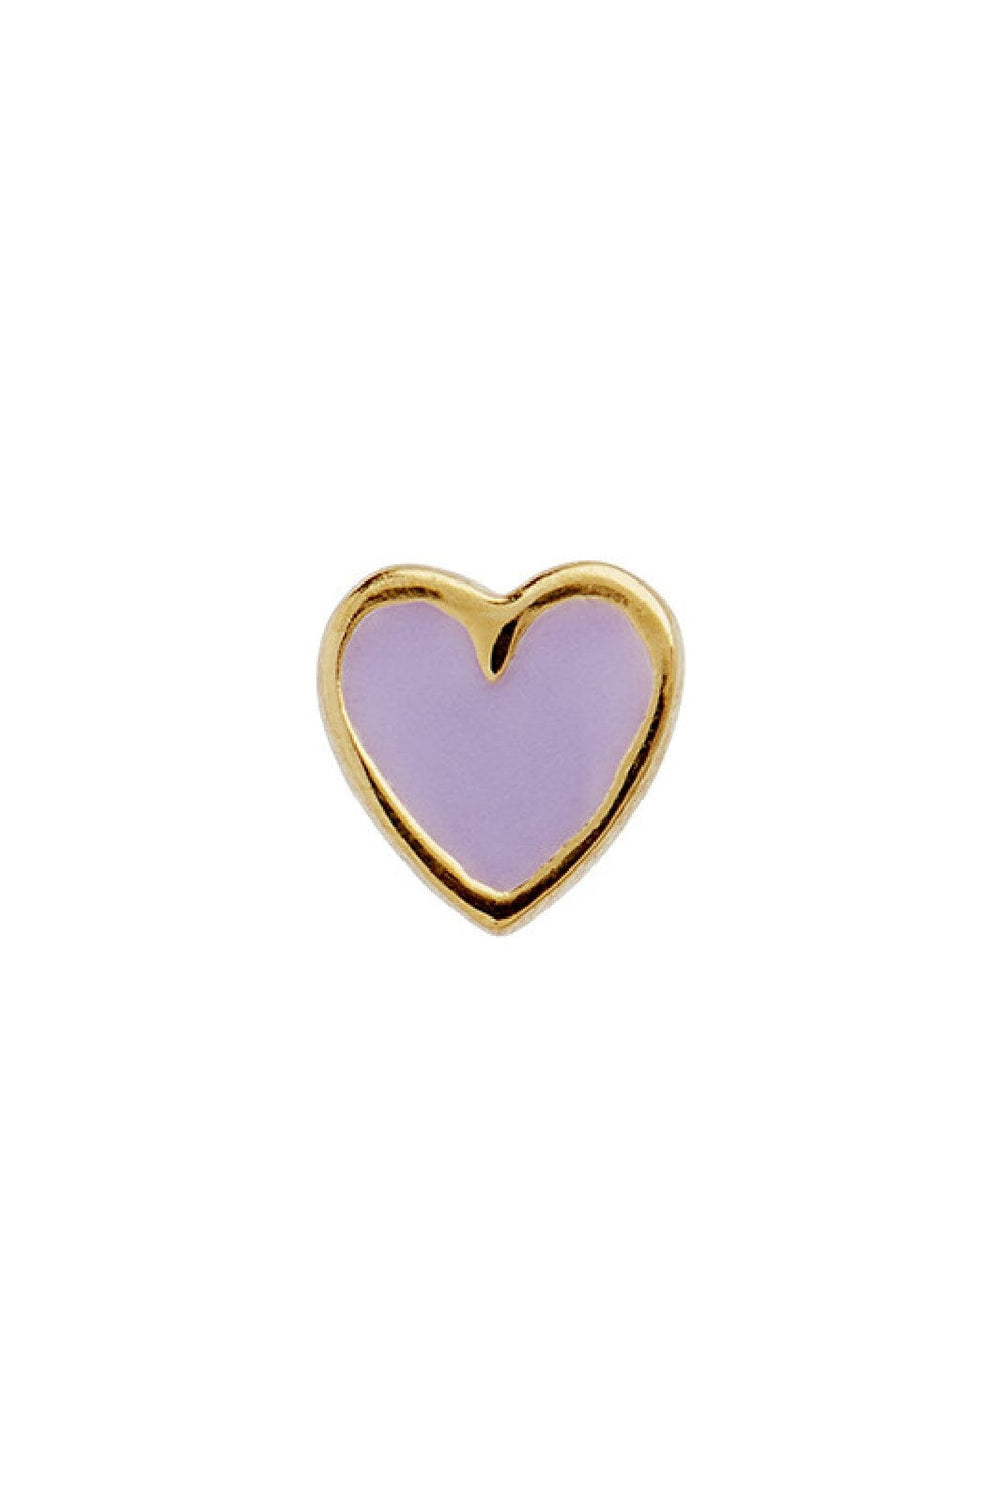 Stine A - Petit Love Heart Purple Sorbet Enamel Gold - 1181-02-Purple Sorbet Øreringe 